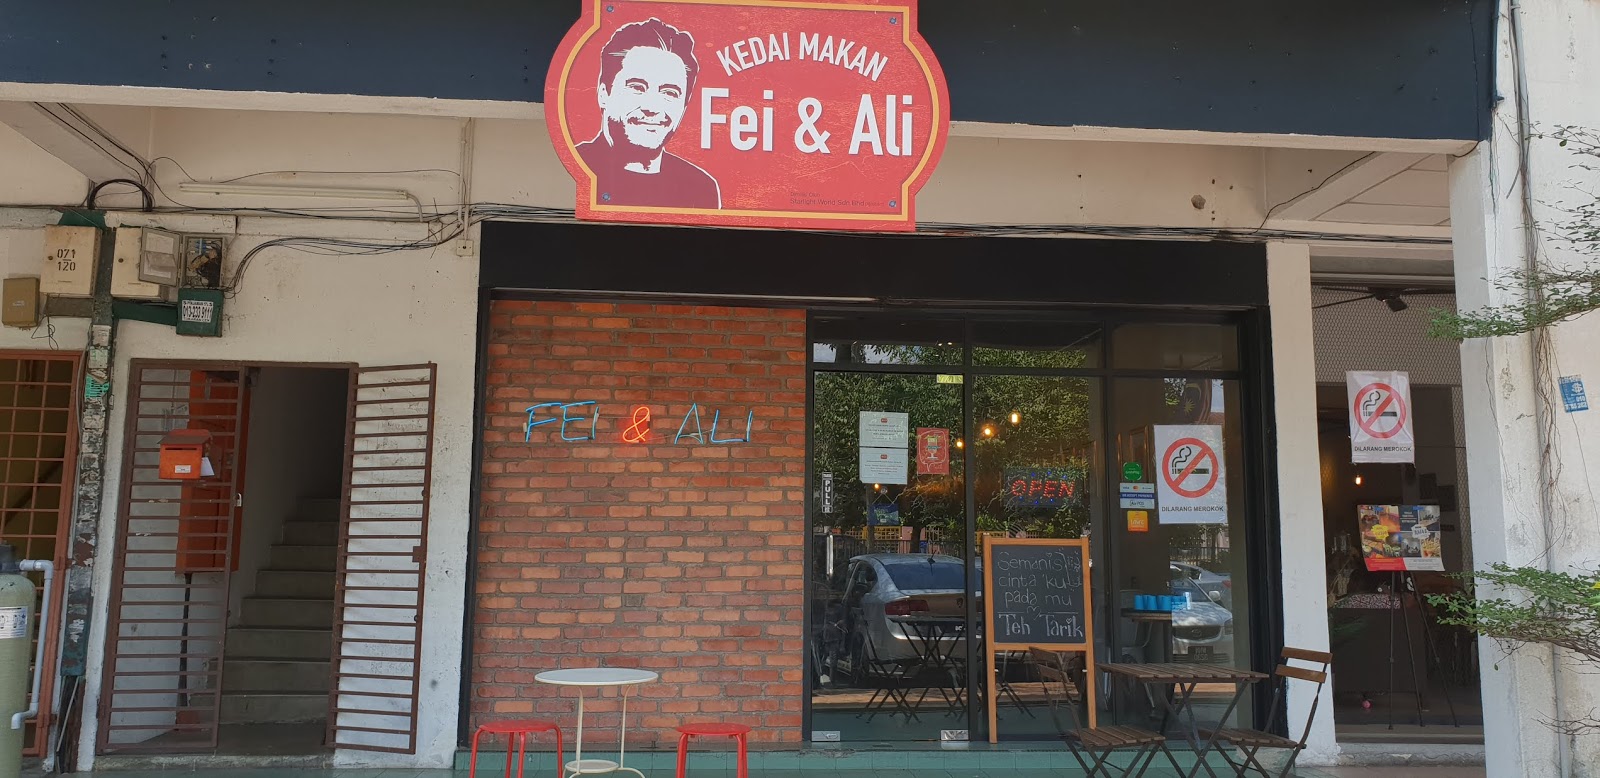 WANDERLUST DJ: Kedai Makan Fei & Ali, Shah Alam